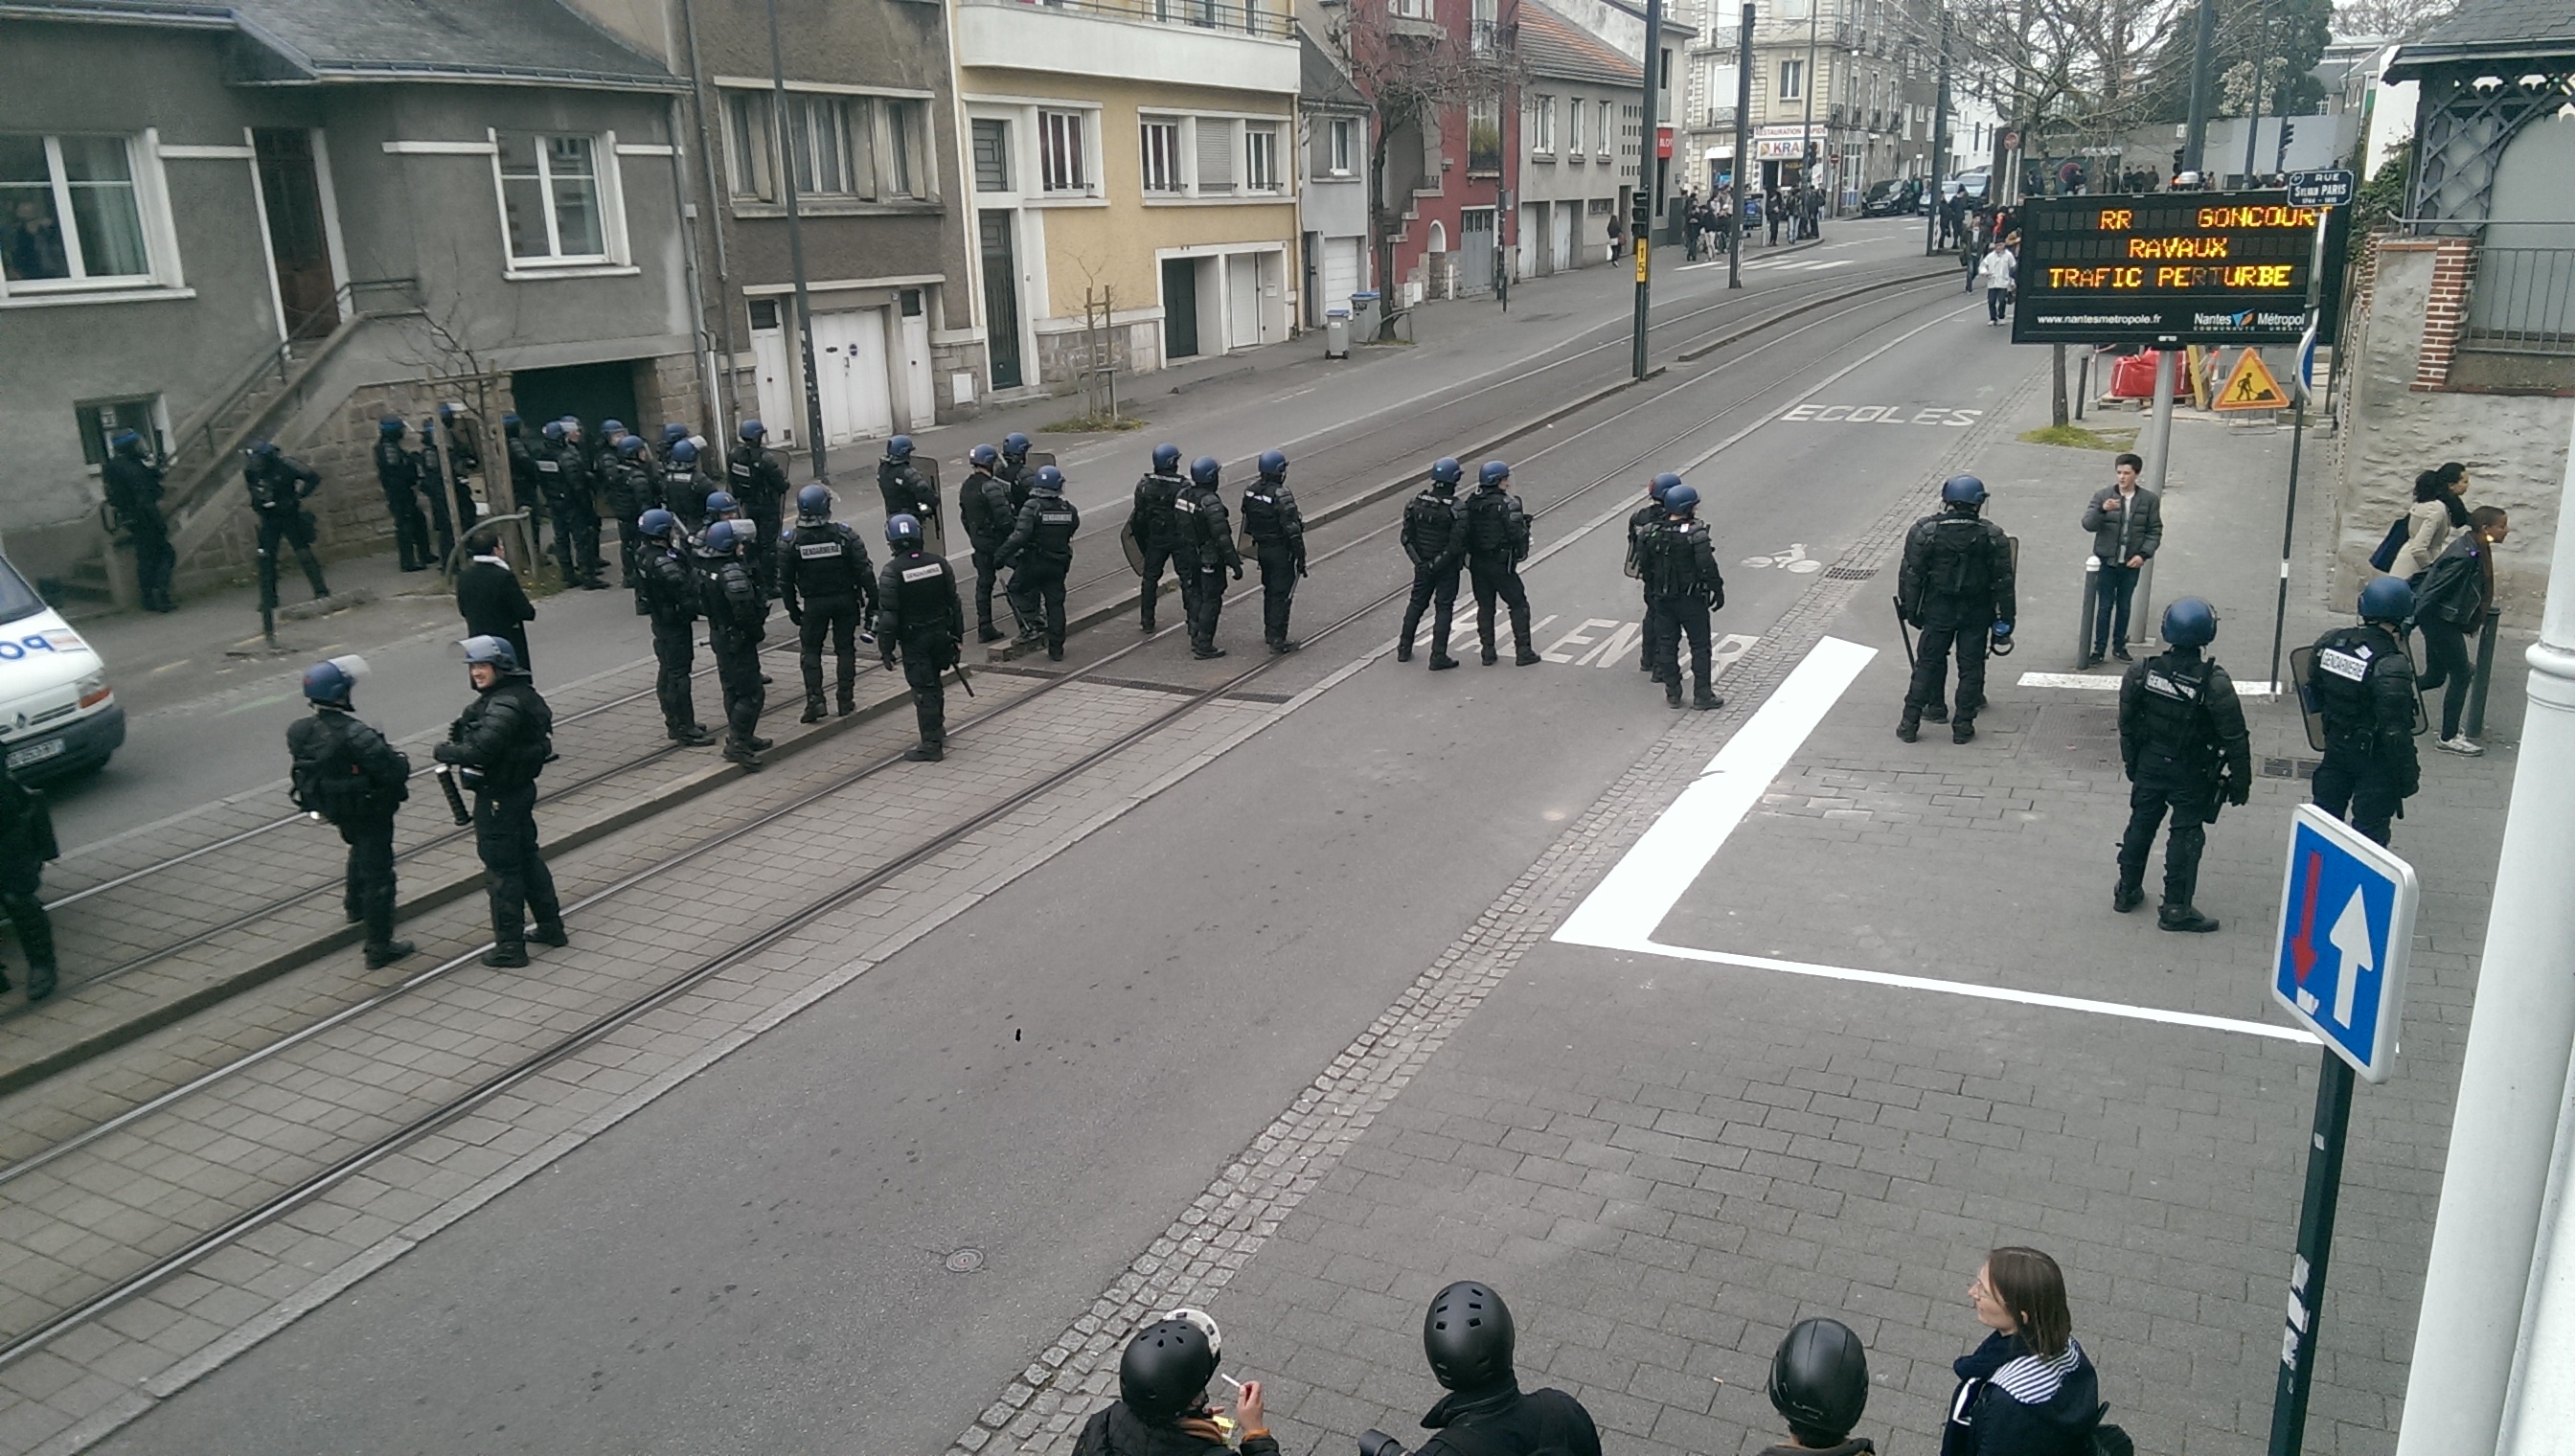 20160324 - Violences policières à Nantes - 19